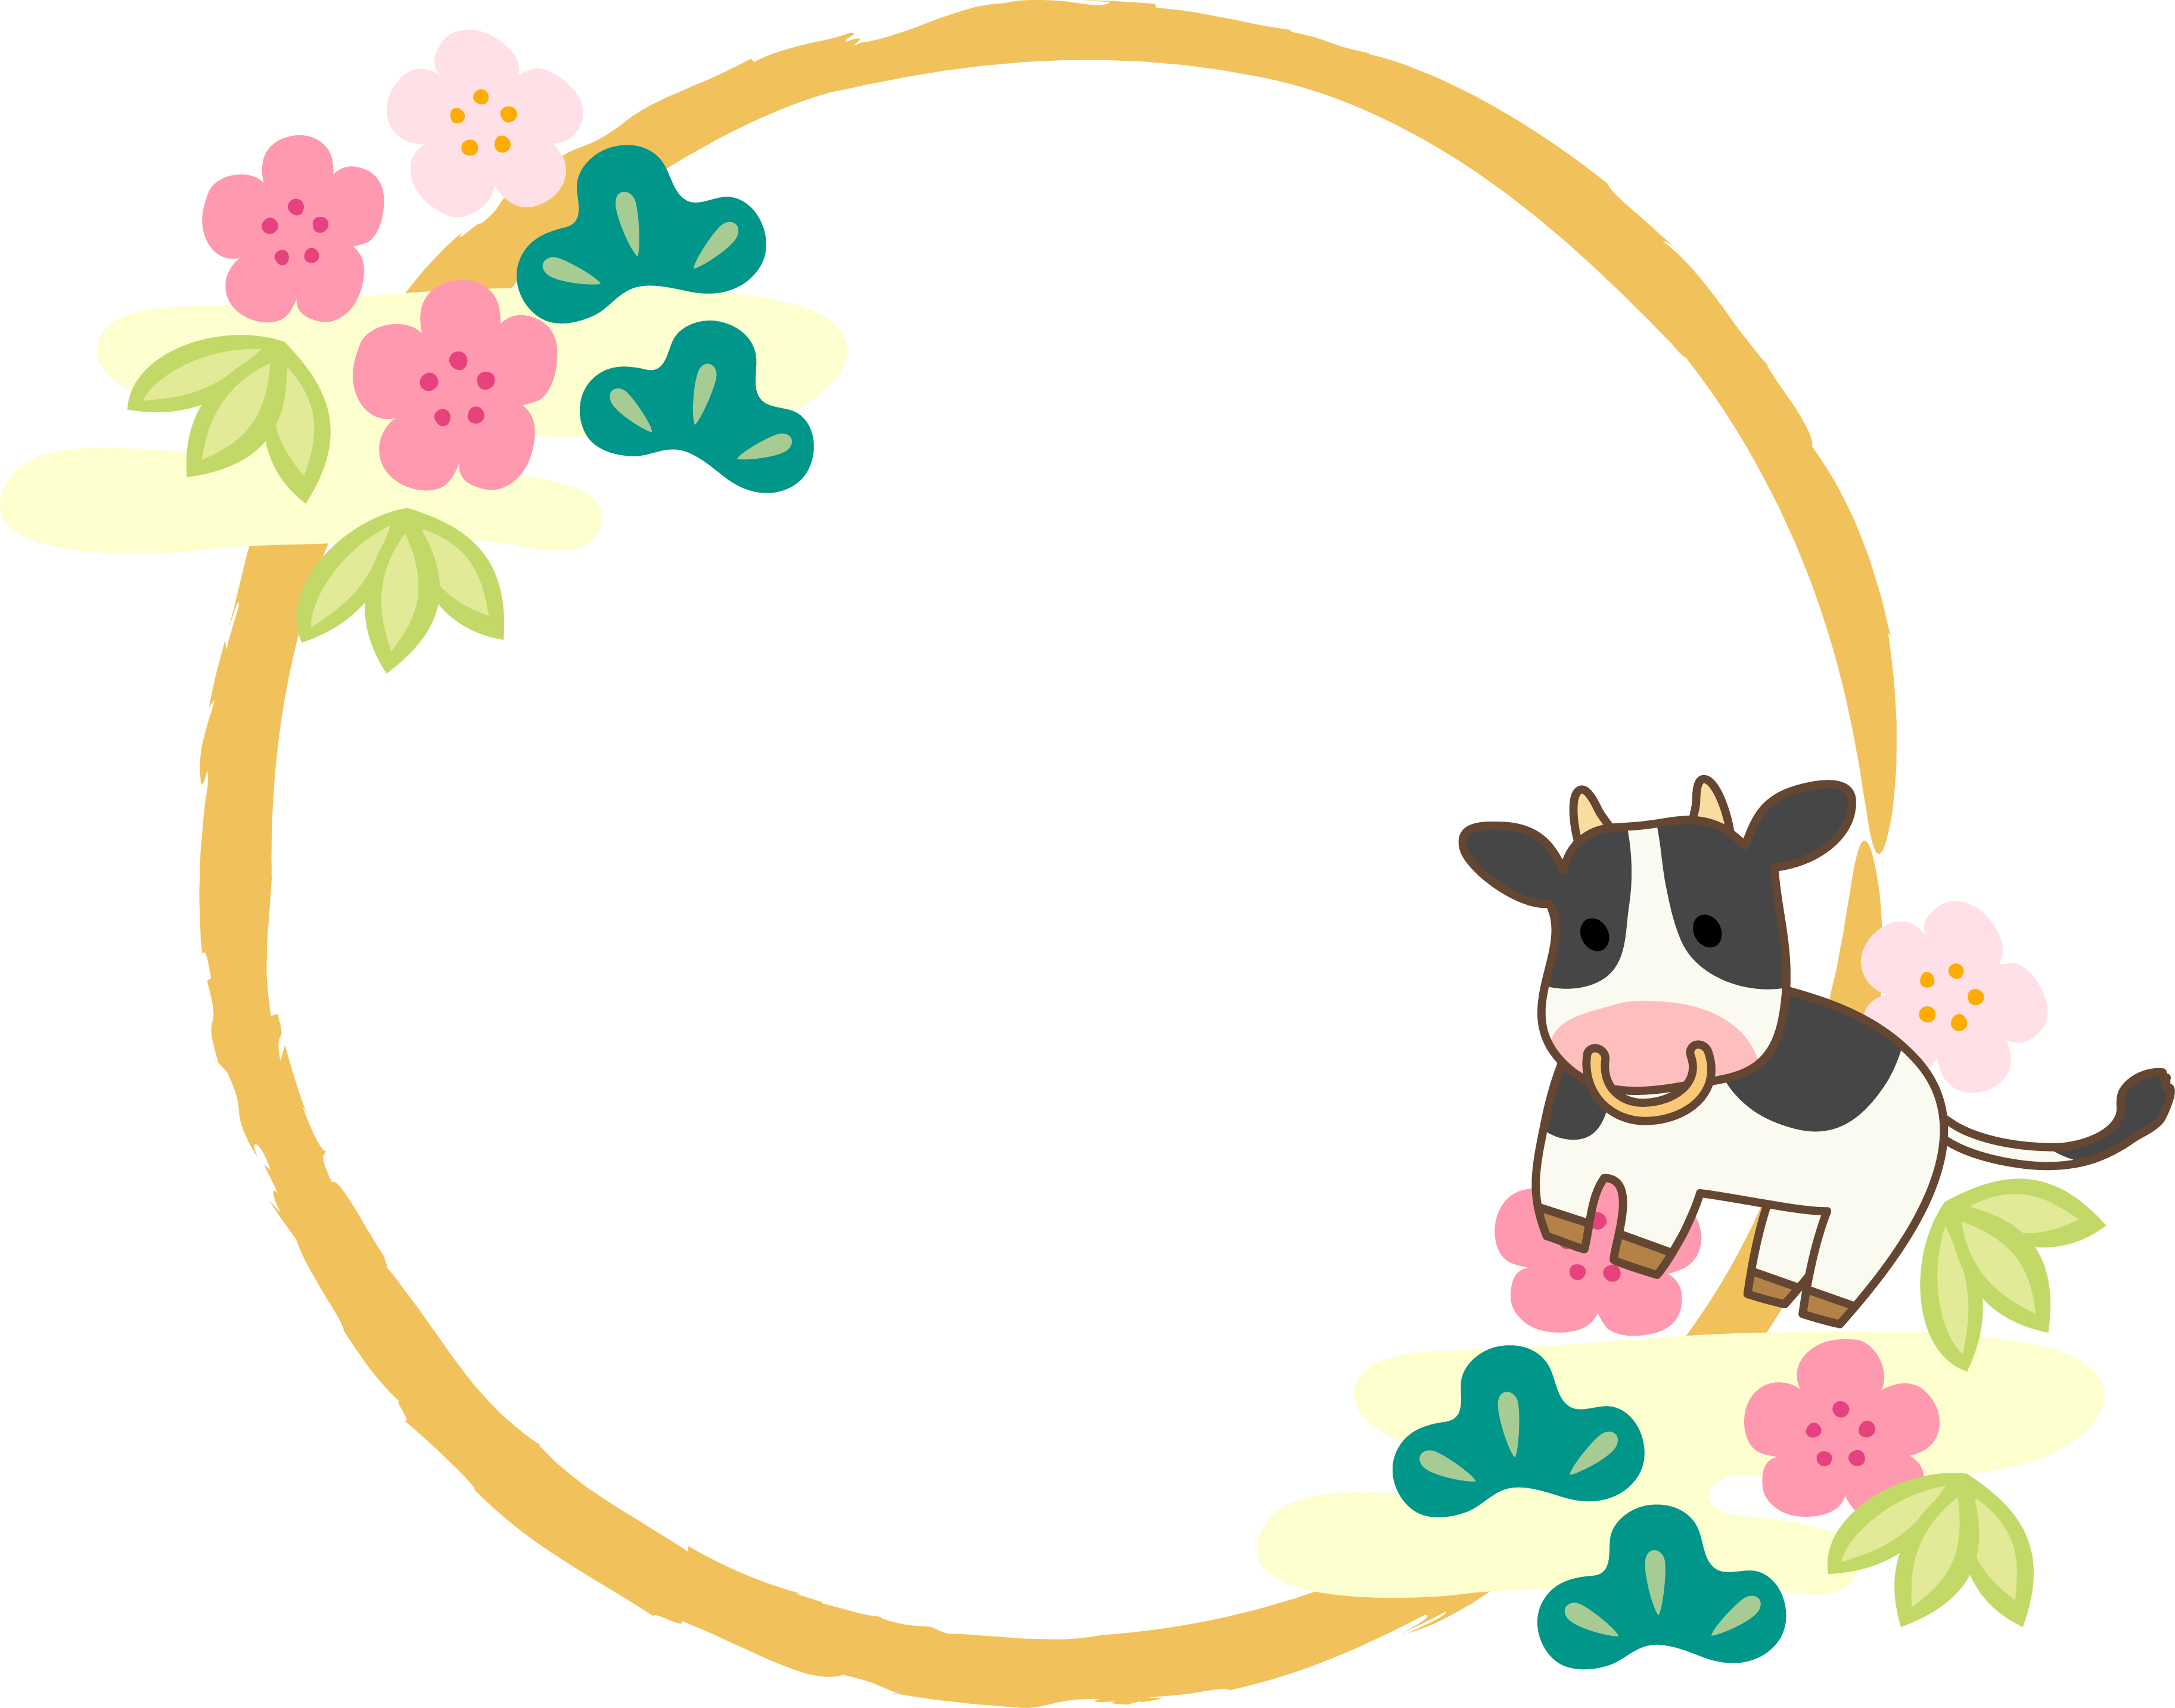 牛、松竹梅和笔画的圆形新年装饰框